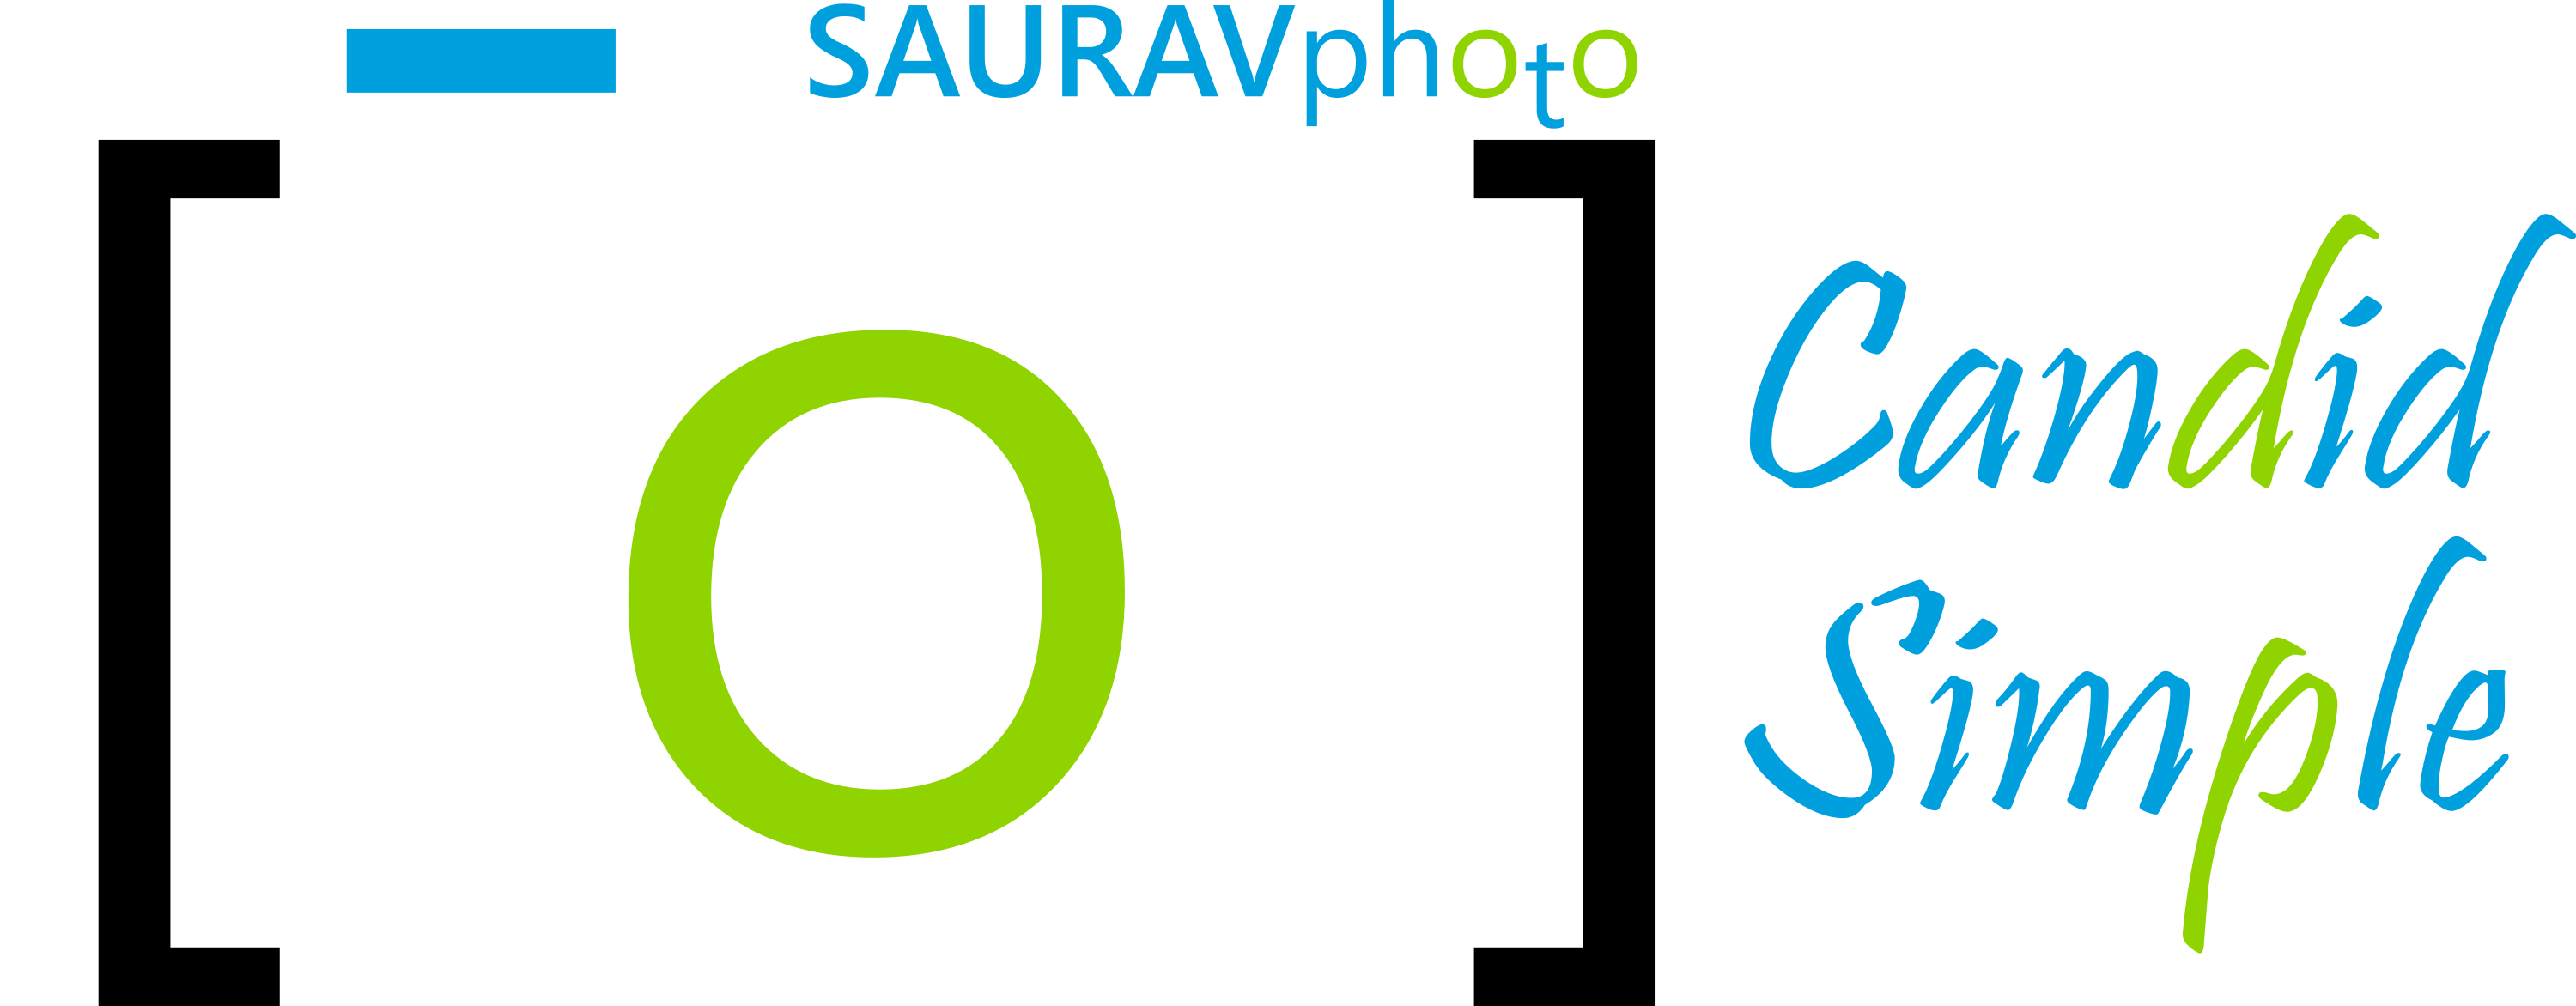 SAURAVphoto Online Store